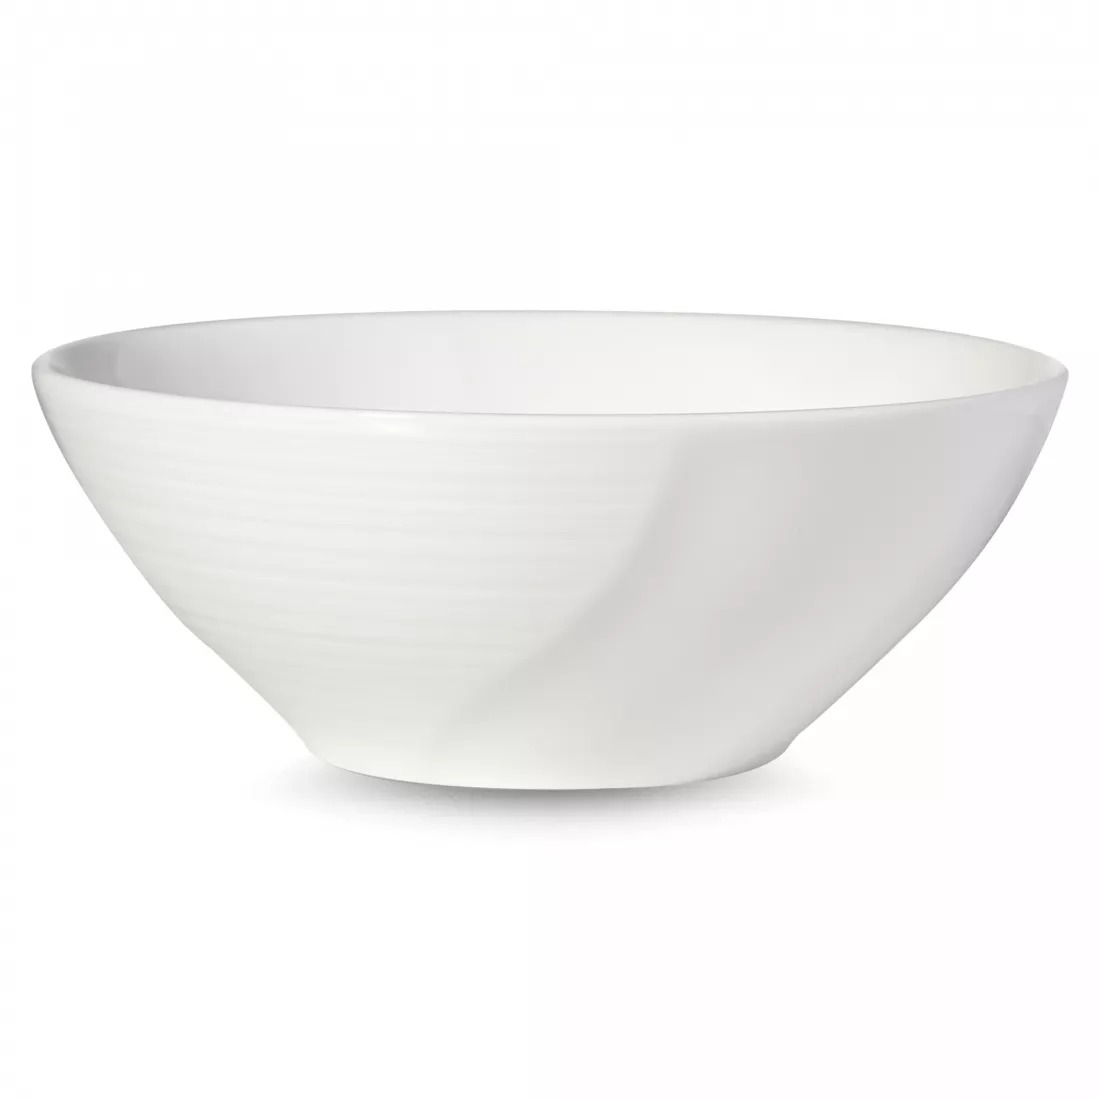 Салатник порционный Narumi Воздушный белый 14 см тарелка закусочная narumi воздушный белый 23 см